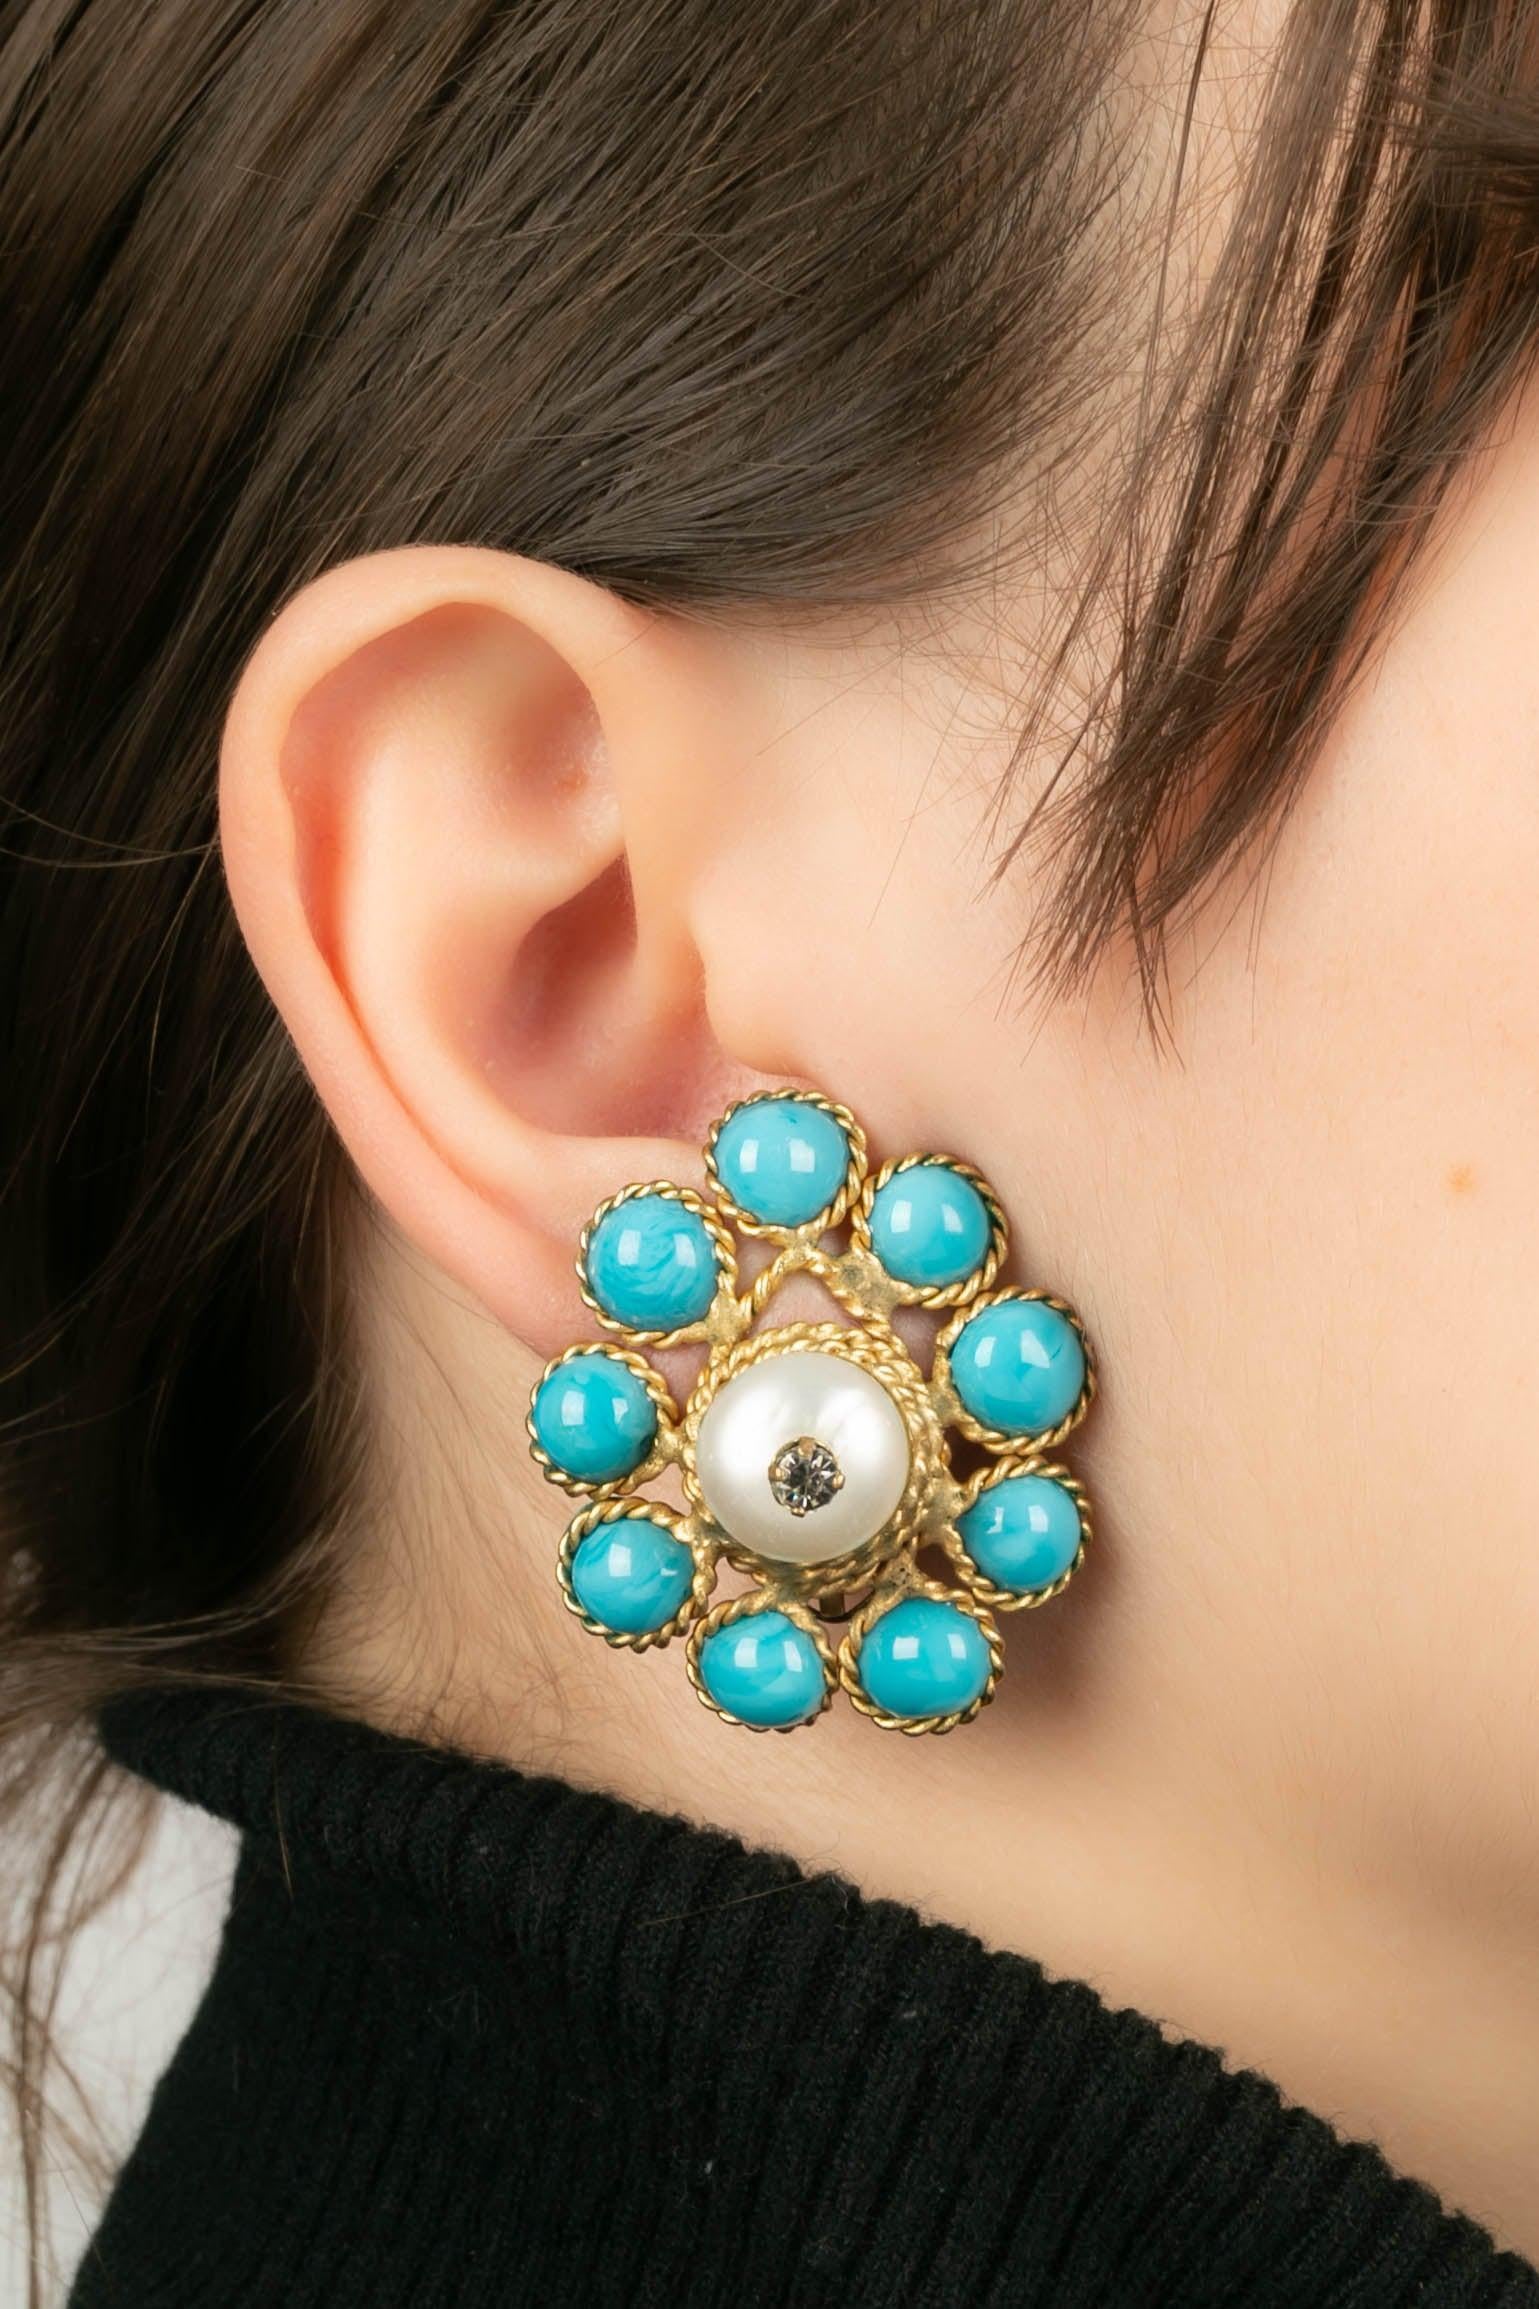 Gripoix - Ohrringe aus goldenem Metall, Glaspaste und Perlen.

Zusätzliche Informationen:
Zustand: Sehr guter Zustand
Abmessungen: Höhe: 4 cm

Referenz des Sellers: BO170